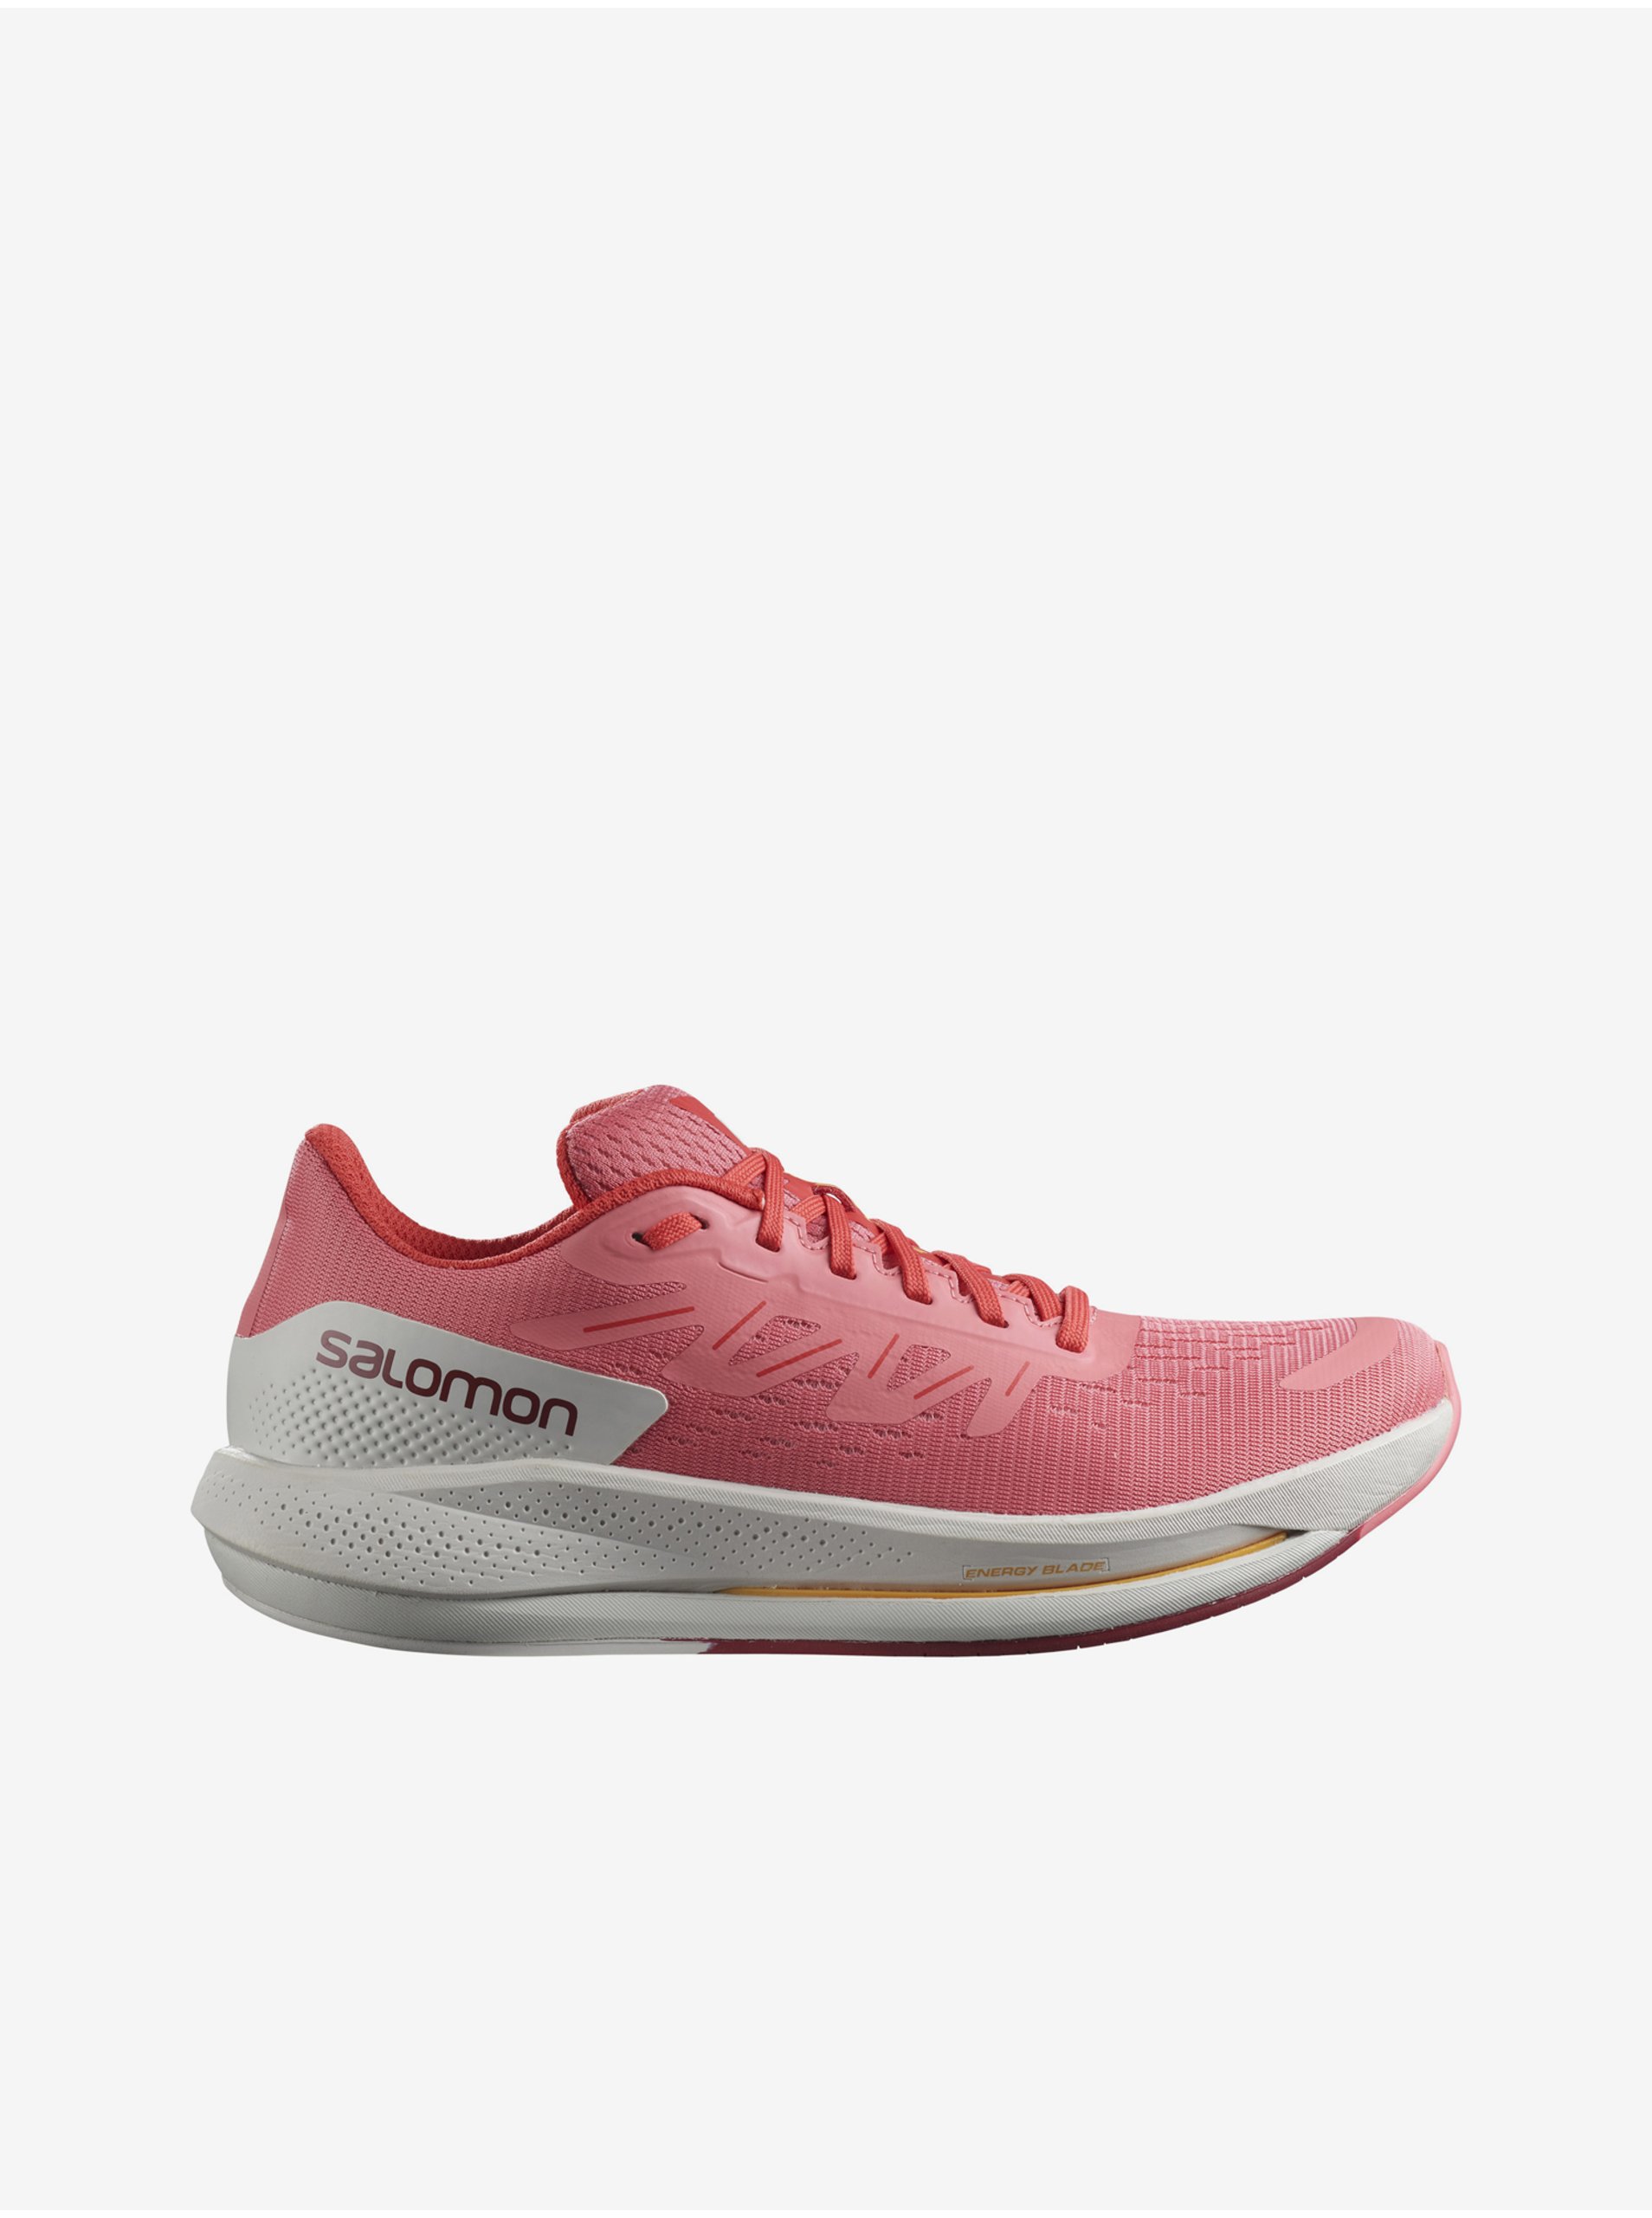 E-shop Topánky pre ženy Salomon - ružová, biela